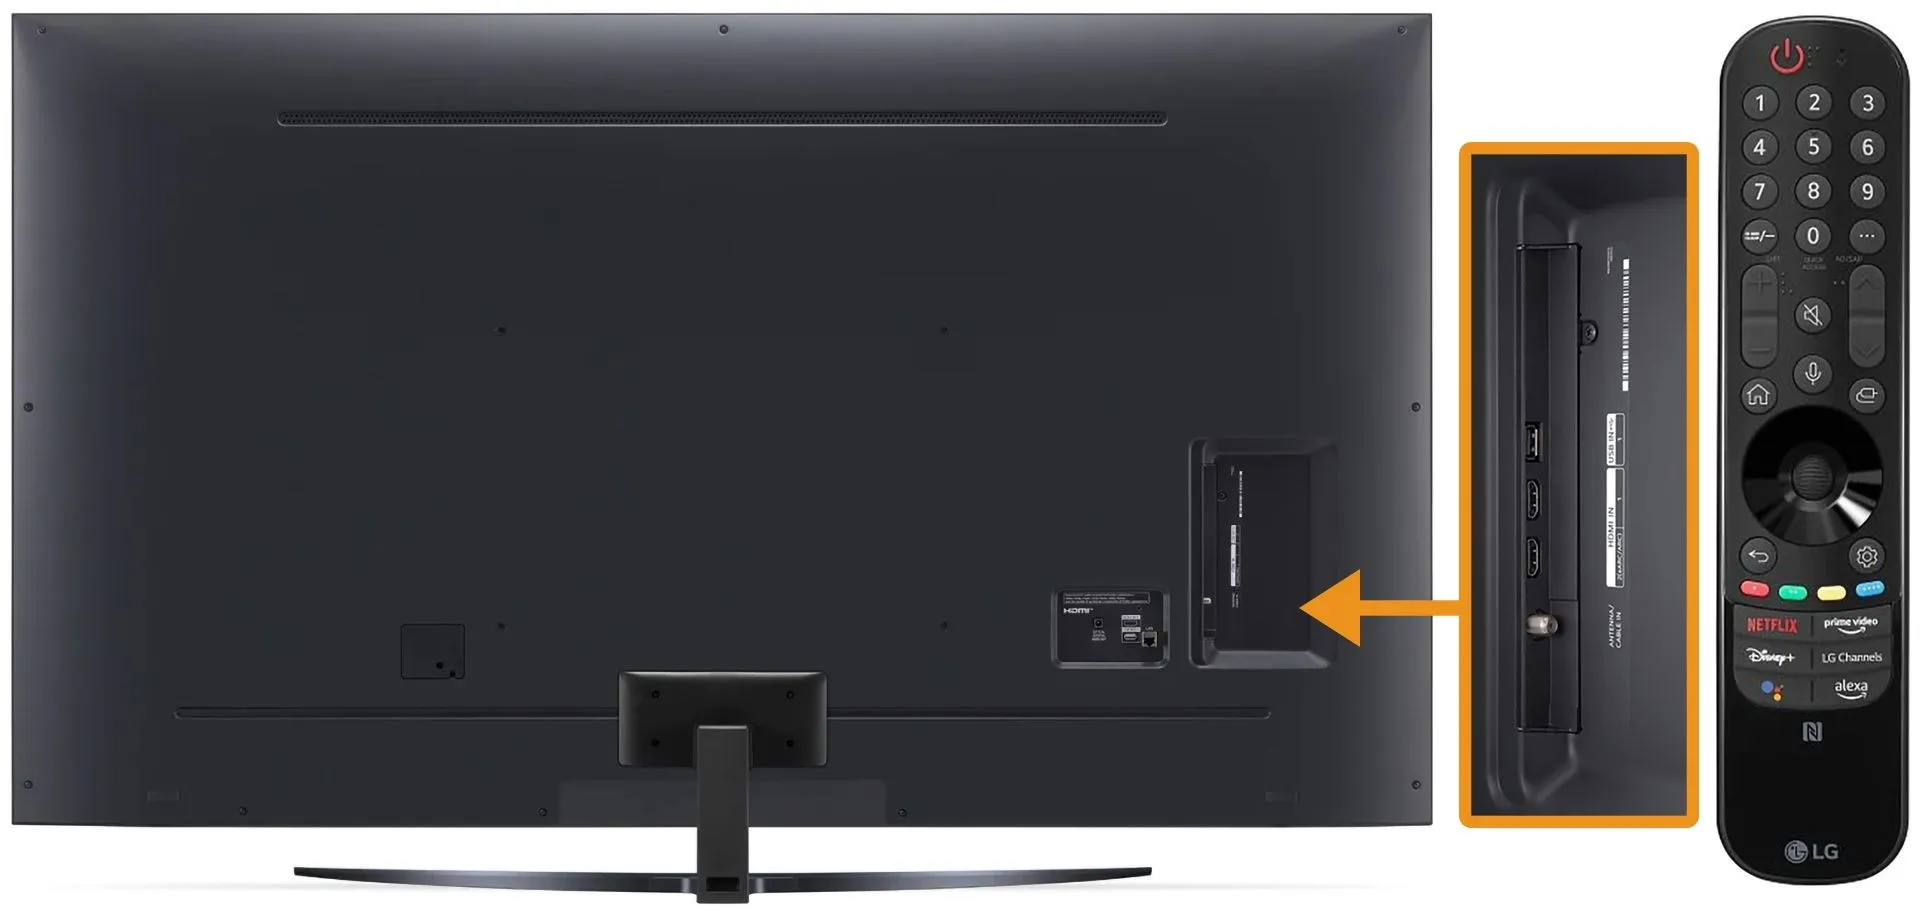 Телевизор LG HD LED Smart TV Android#3